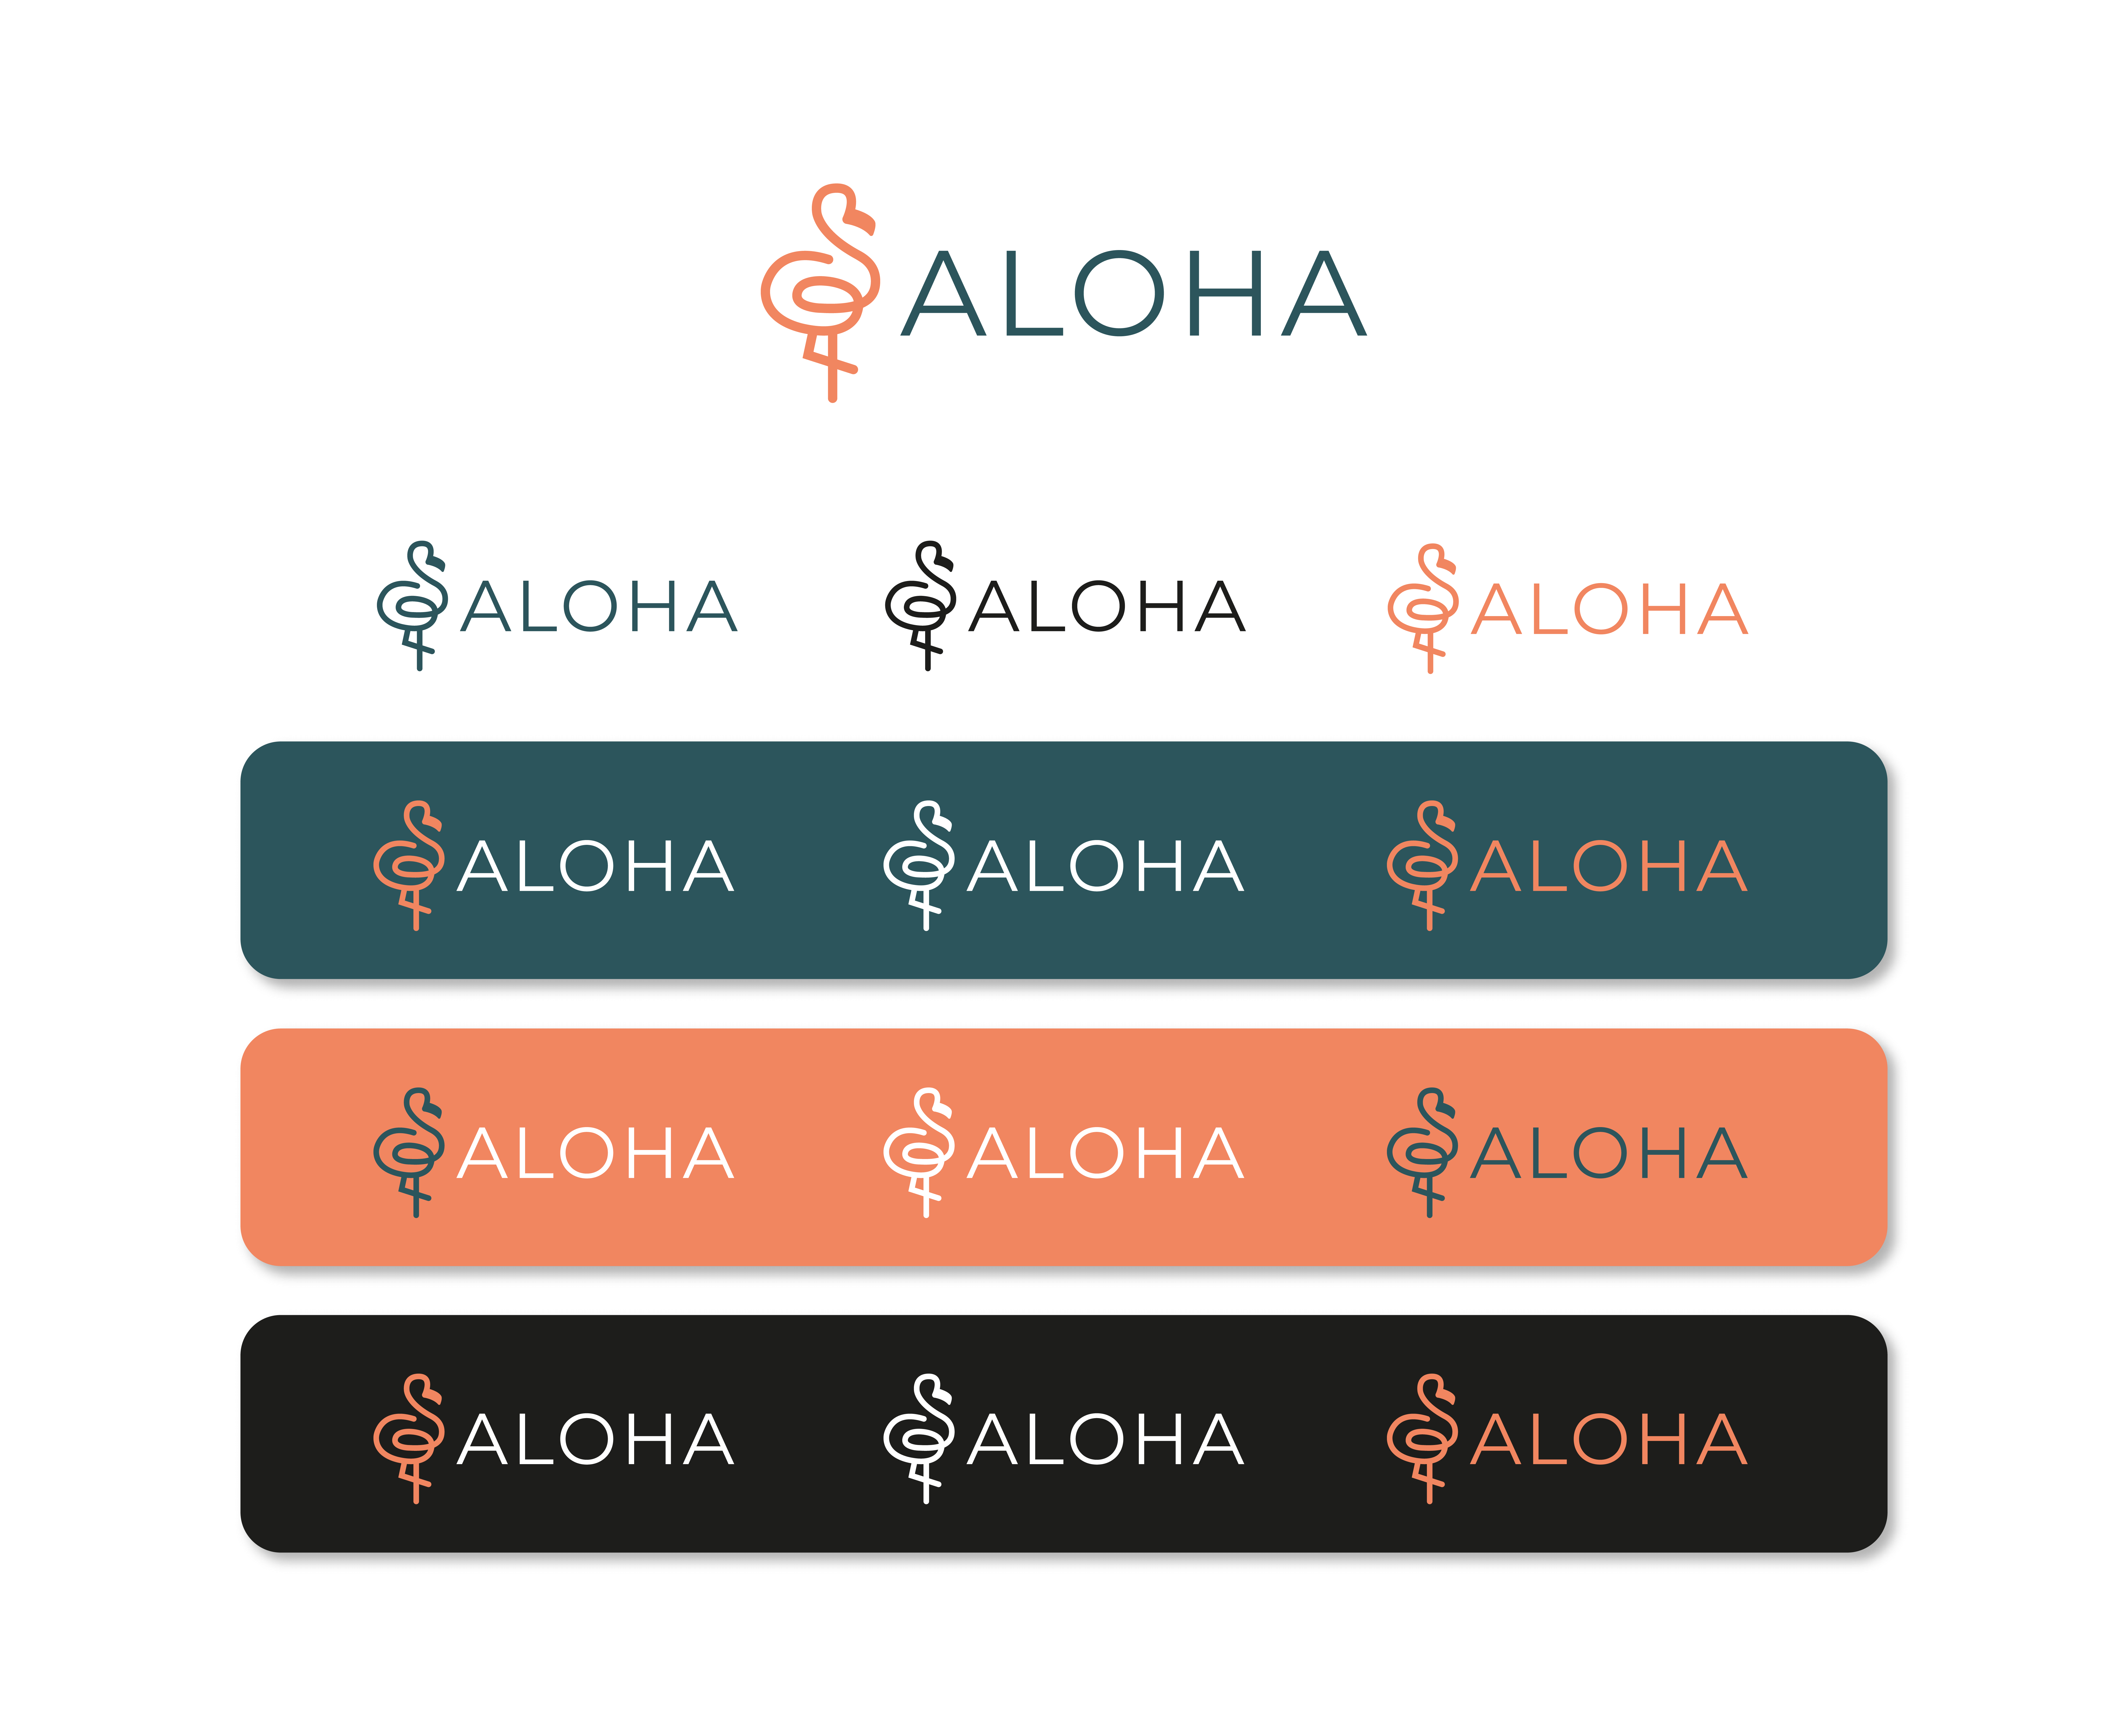 Logo e brand identity di Aloha realizzato da SEBA! grafico di Gravellona Toce nel VCO di tutte le versioni di logo su differenti sfondi